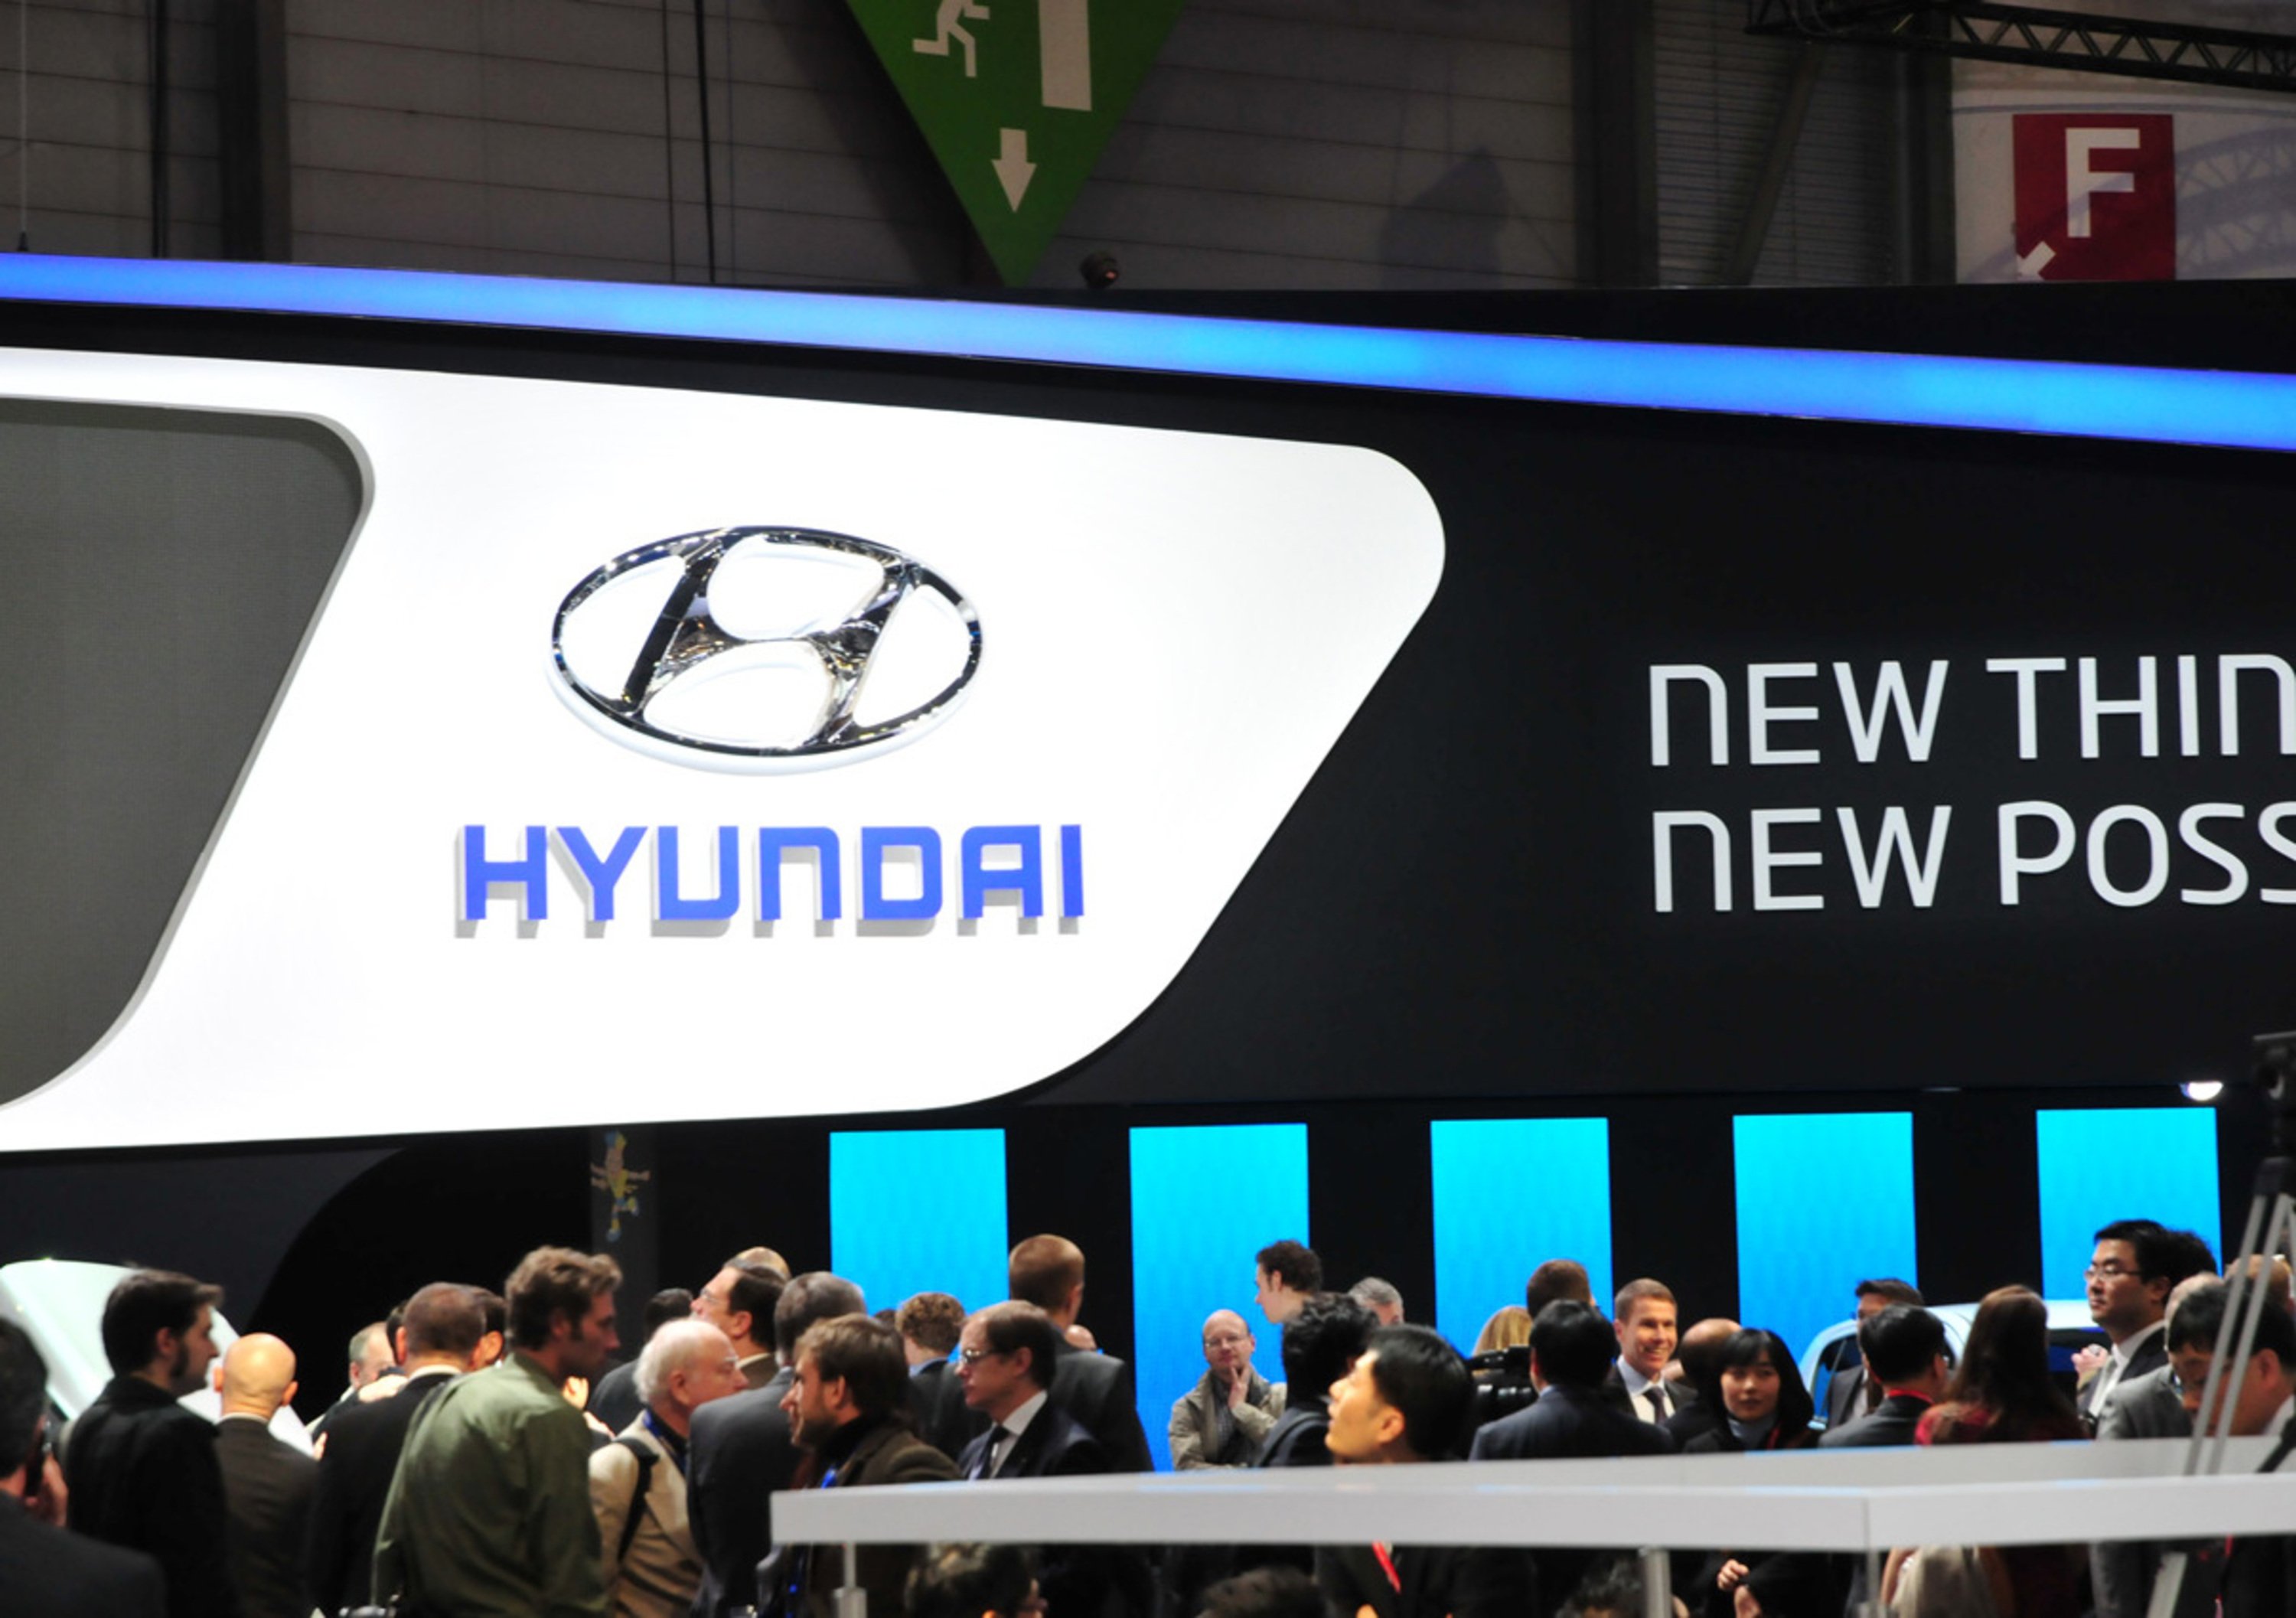 Hyundai lancia il programma &ldquo;Skills for the Future&rdquo; per la formazione giovanile